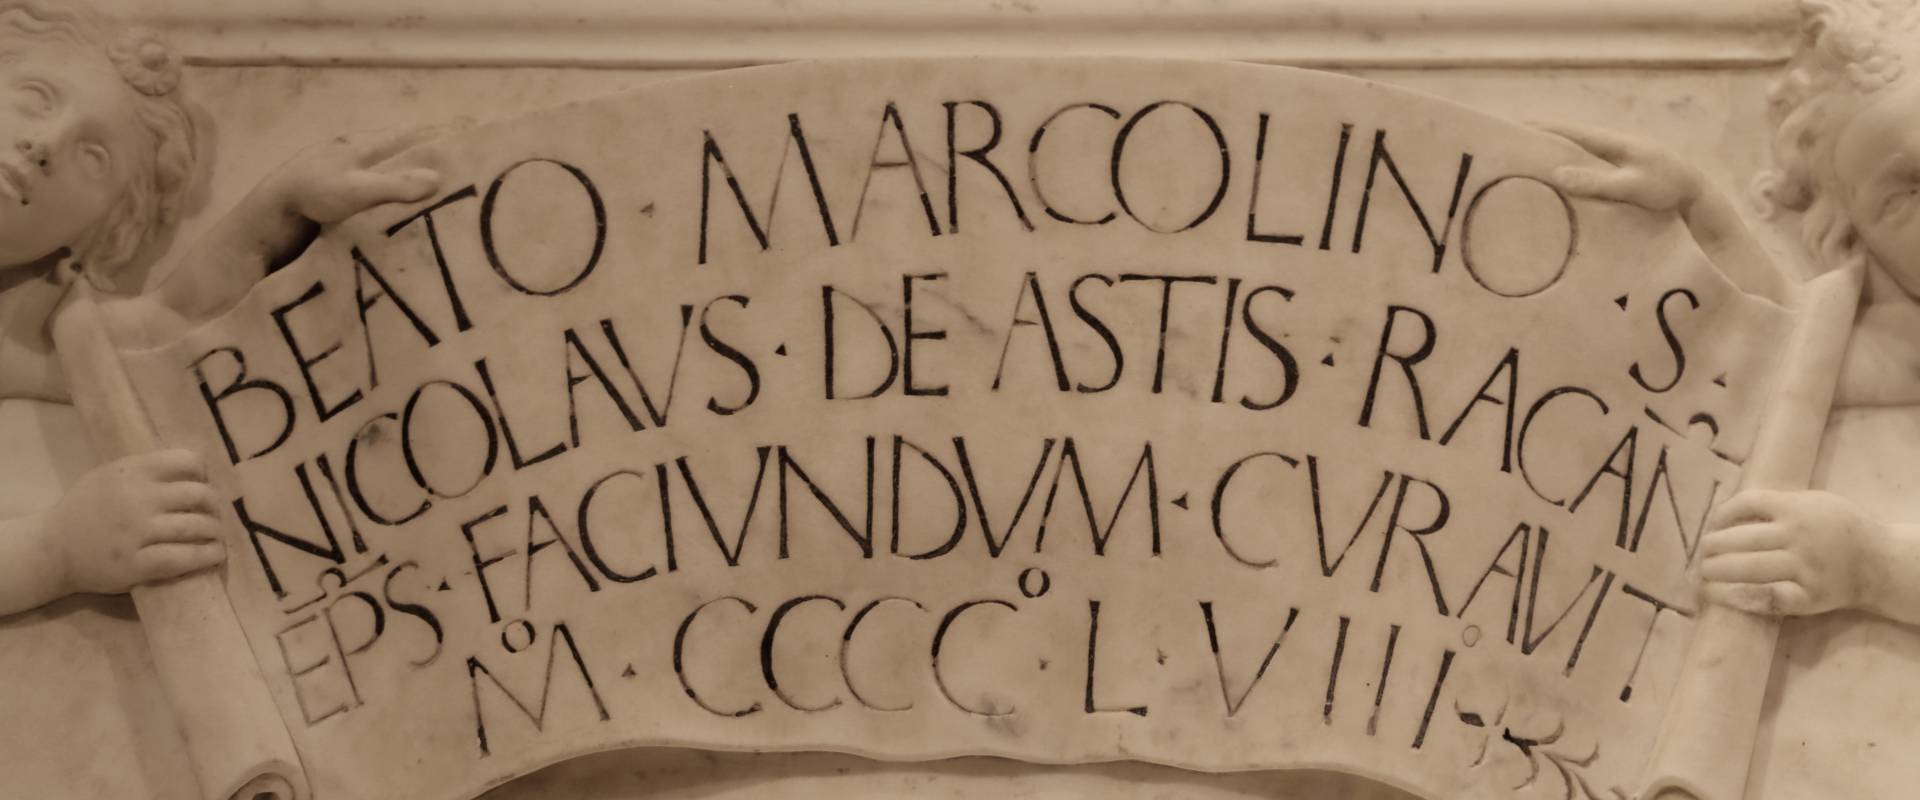 Antonio rossellino, sarcofago del beato marcolino amanni, 1458, da s. giacomo in s. domenico a forlì, 11 foto di Sailko